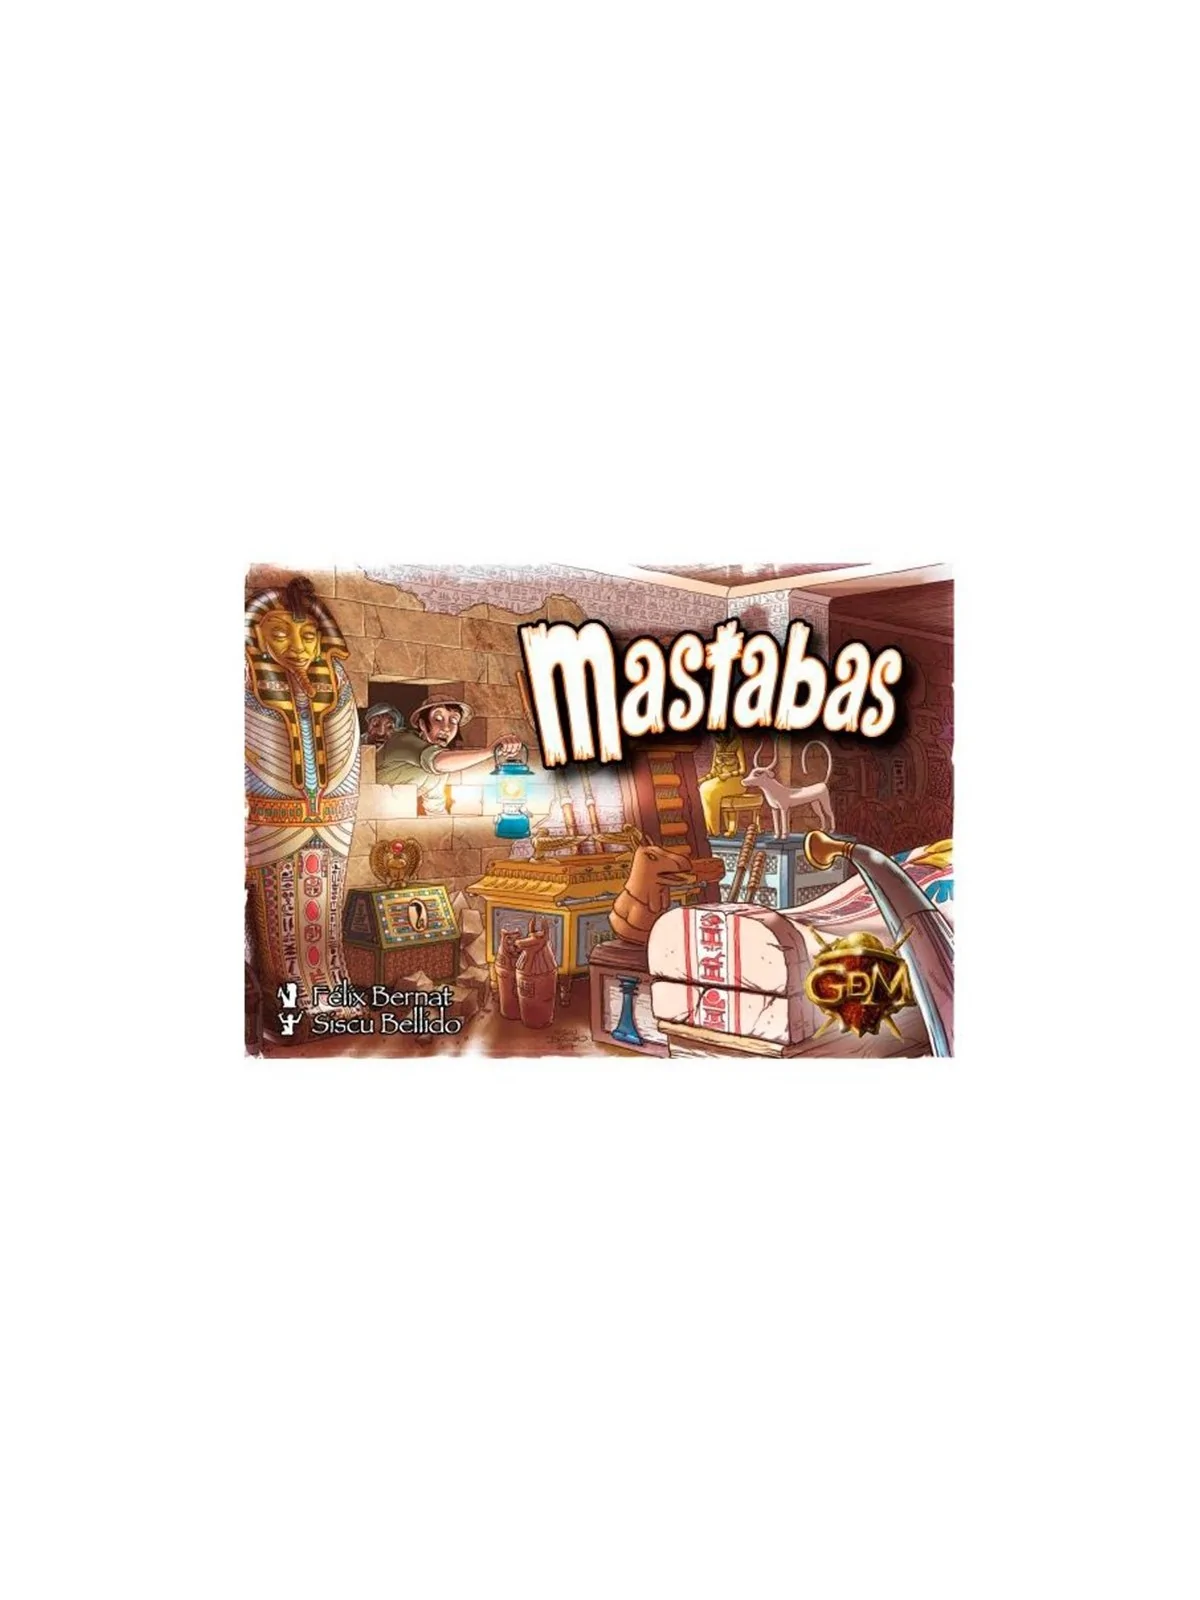 Comprar Mastabas barato al mejor precio 8,95 € de GDM Games